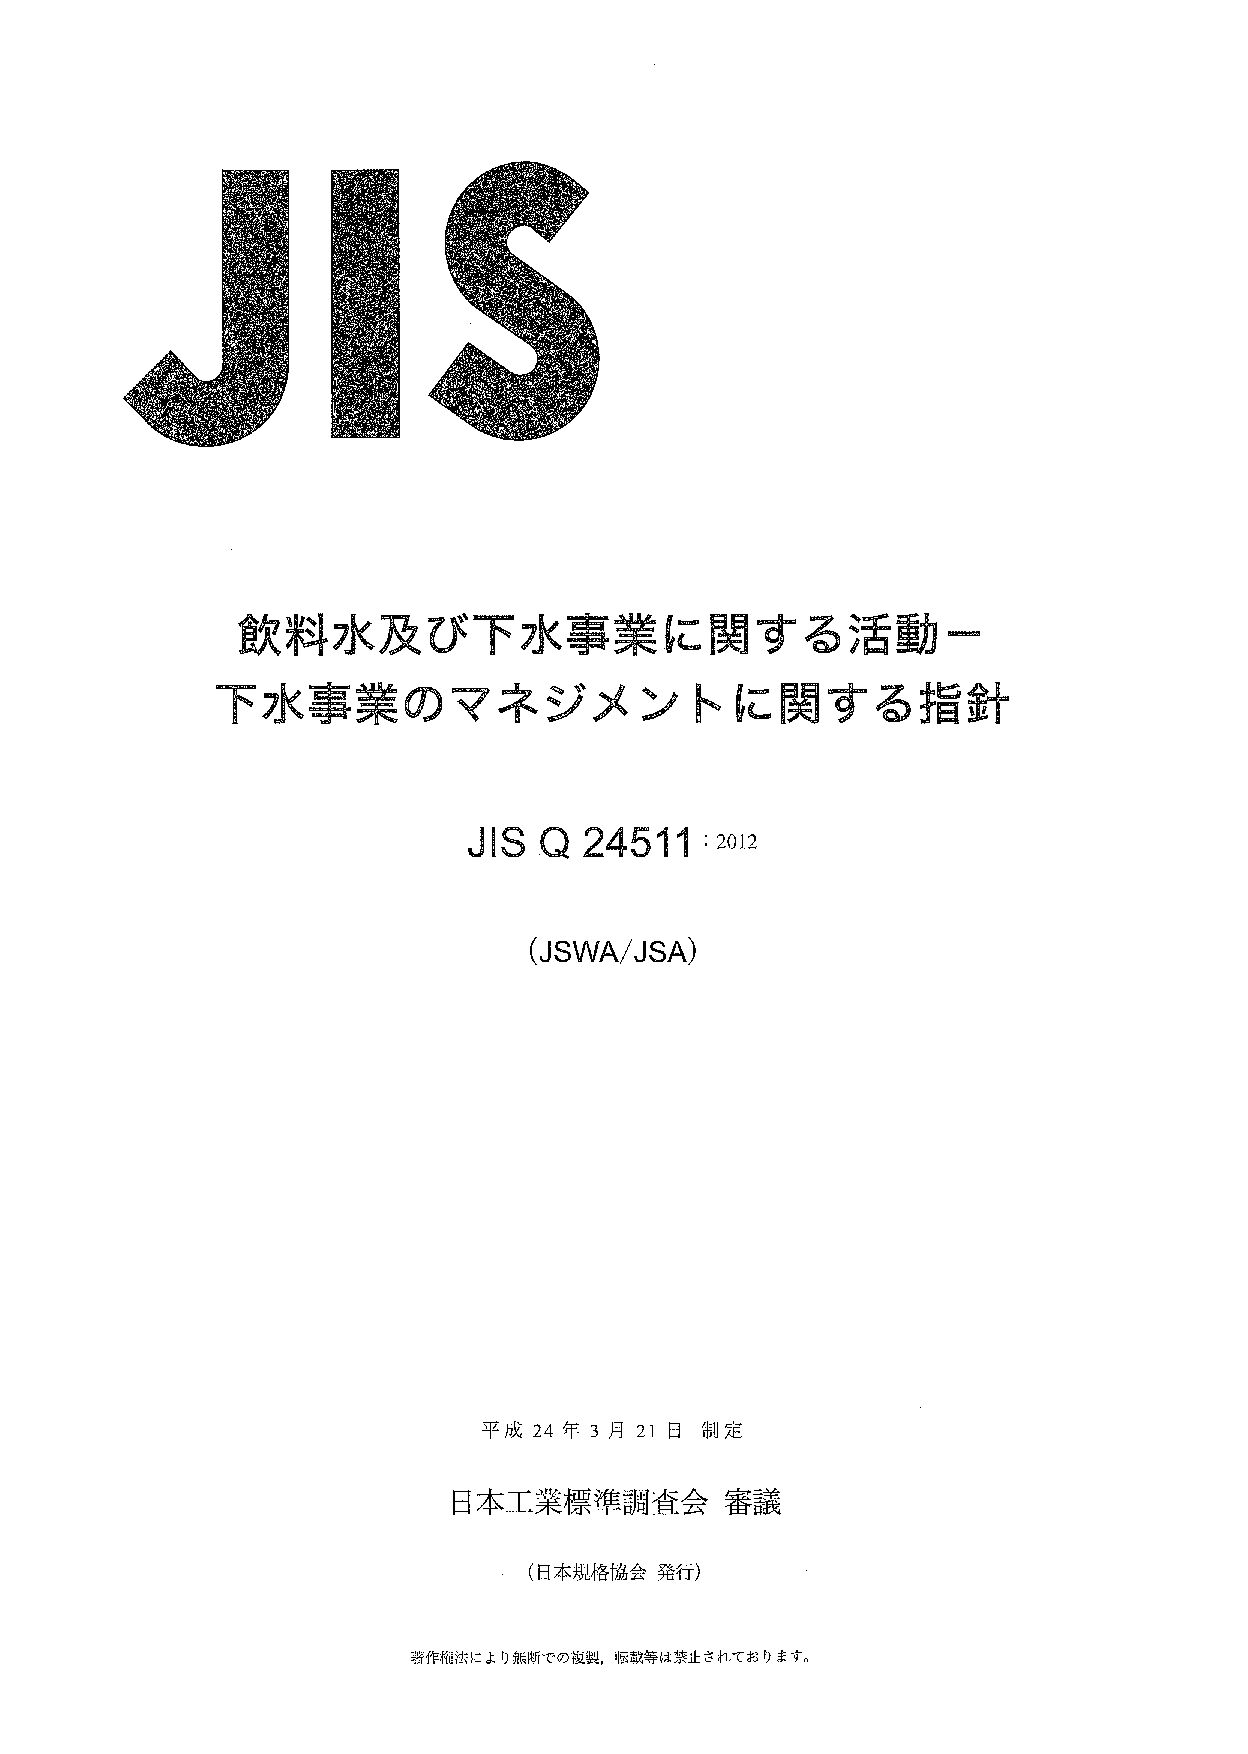 JIS Q 24511:2012